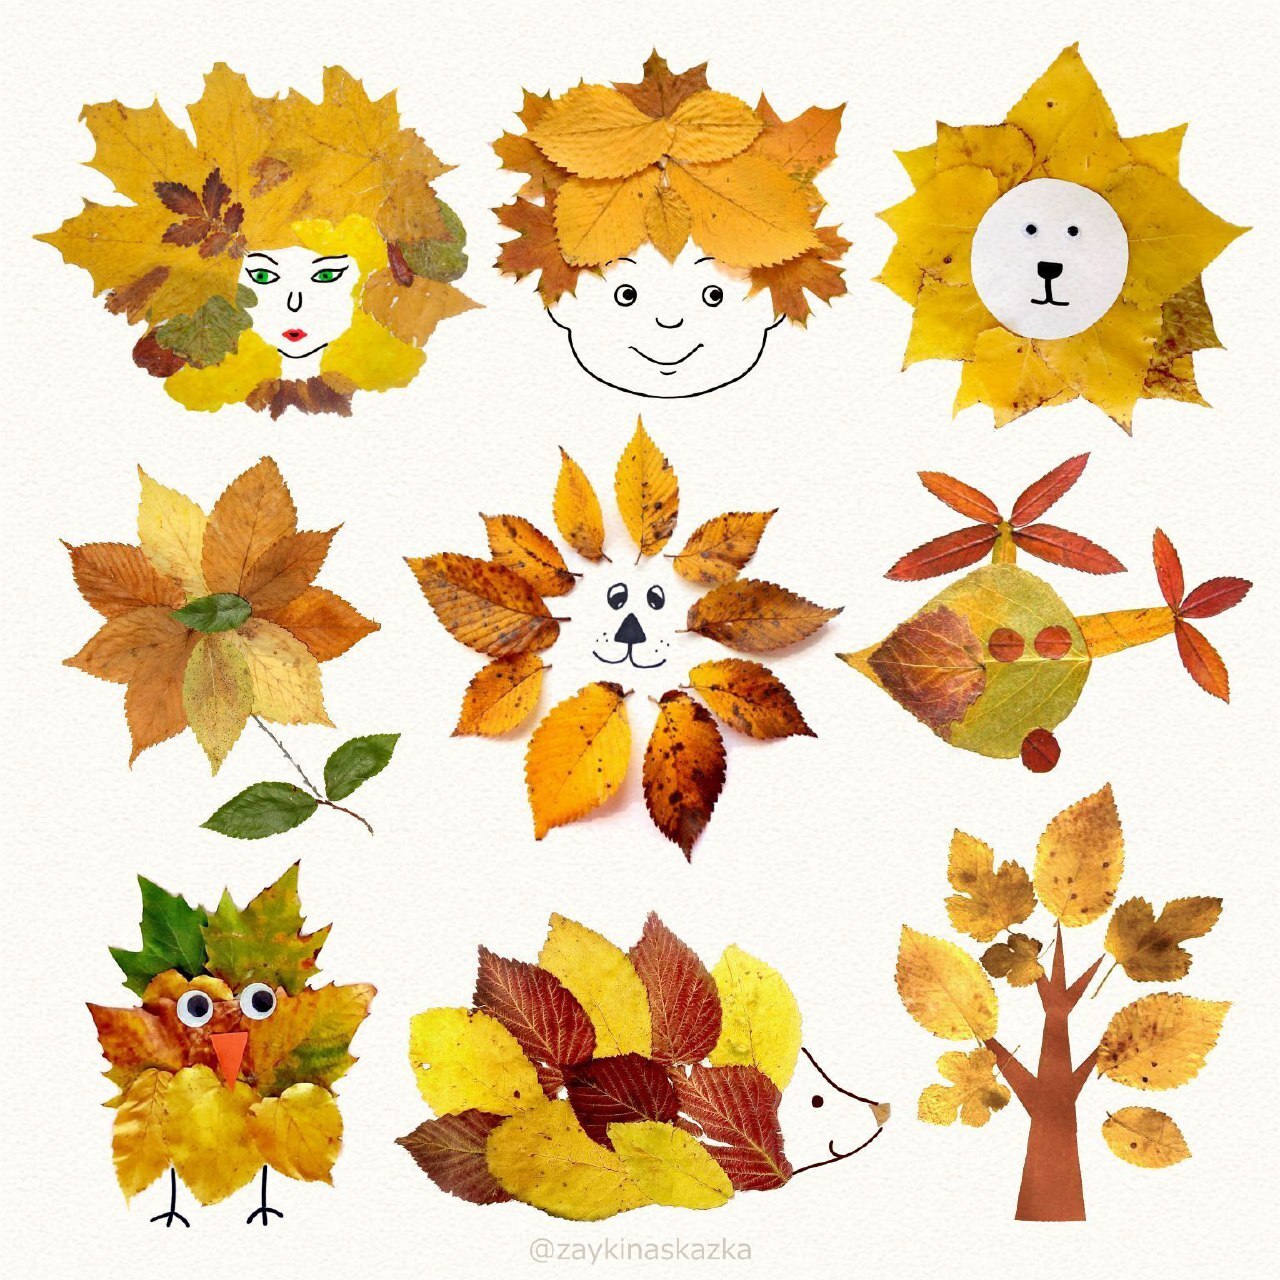 Поделки из листьев на тему осени: 70 идей